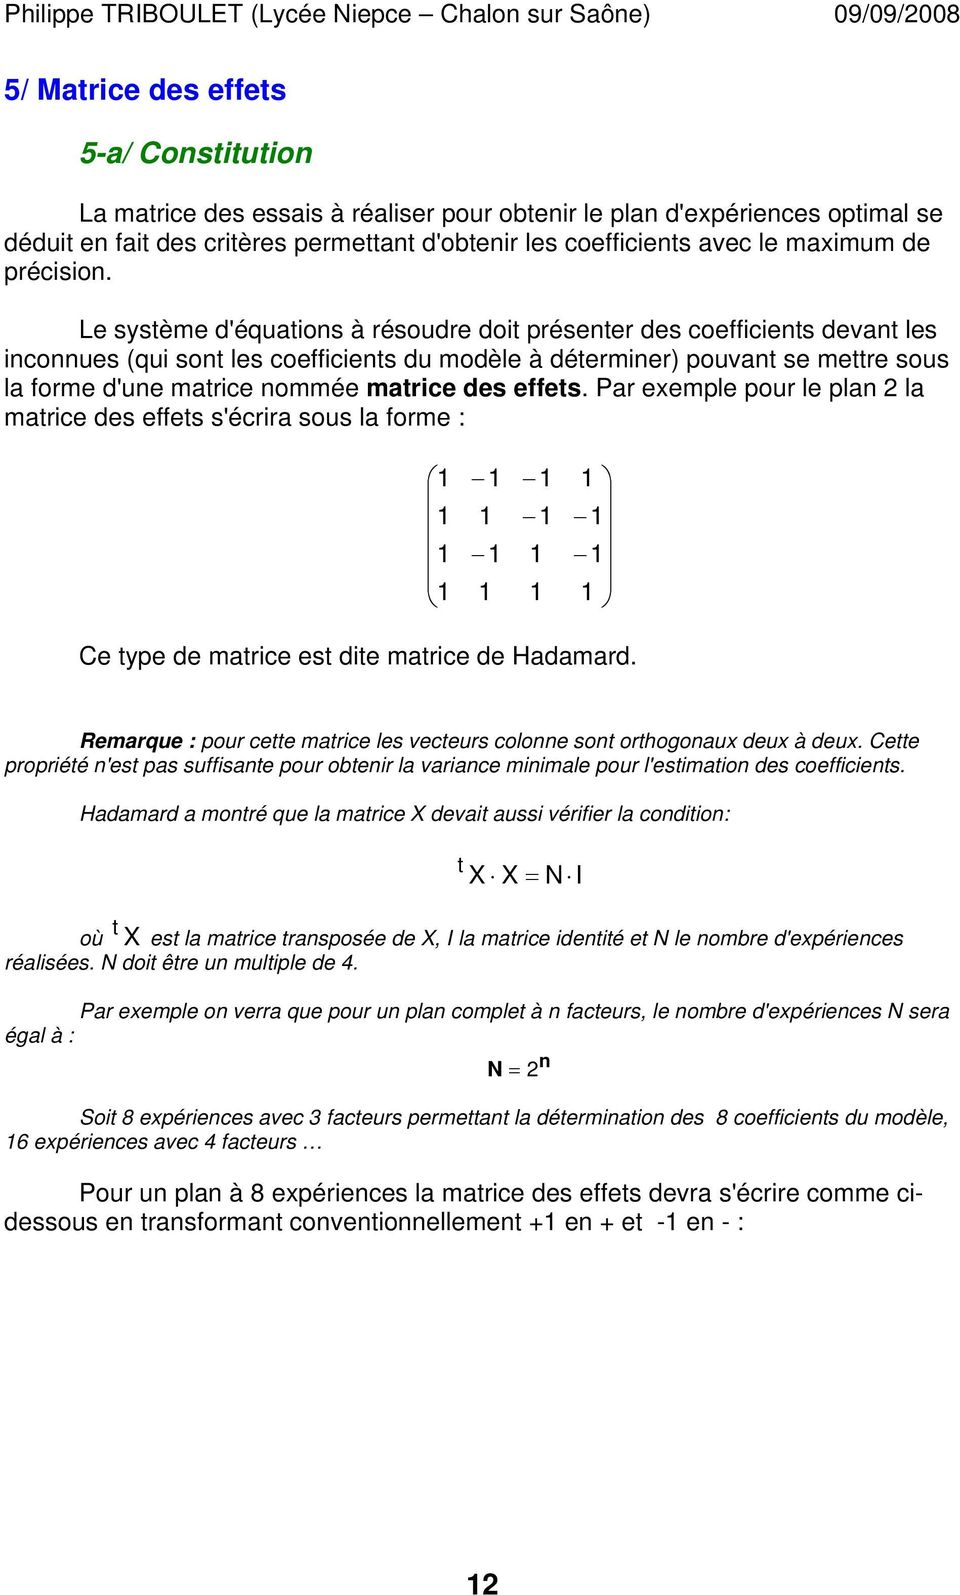 Le système d'équations à résoudre doit présenter des coefficients devant les inconnues (qui sont les coefficients du modèle à déterminer) pouvant se mettre sous la forme d'une matrice nommée matrice